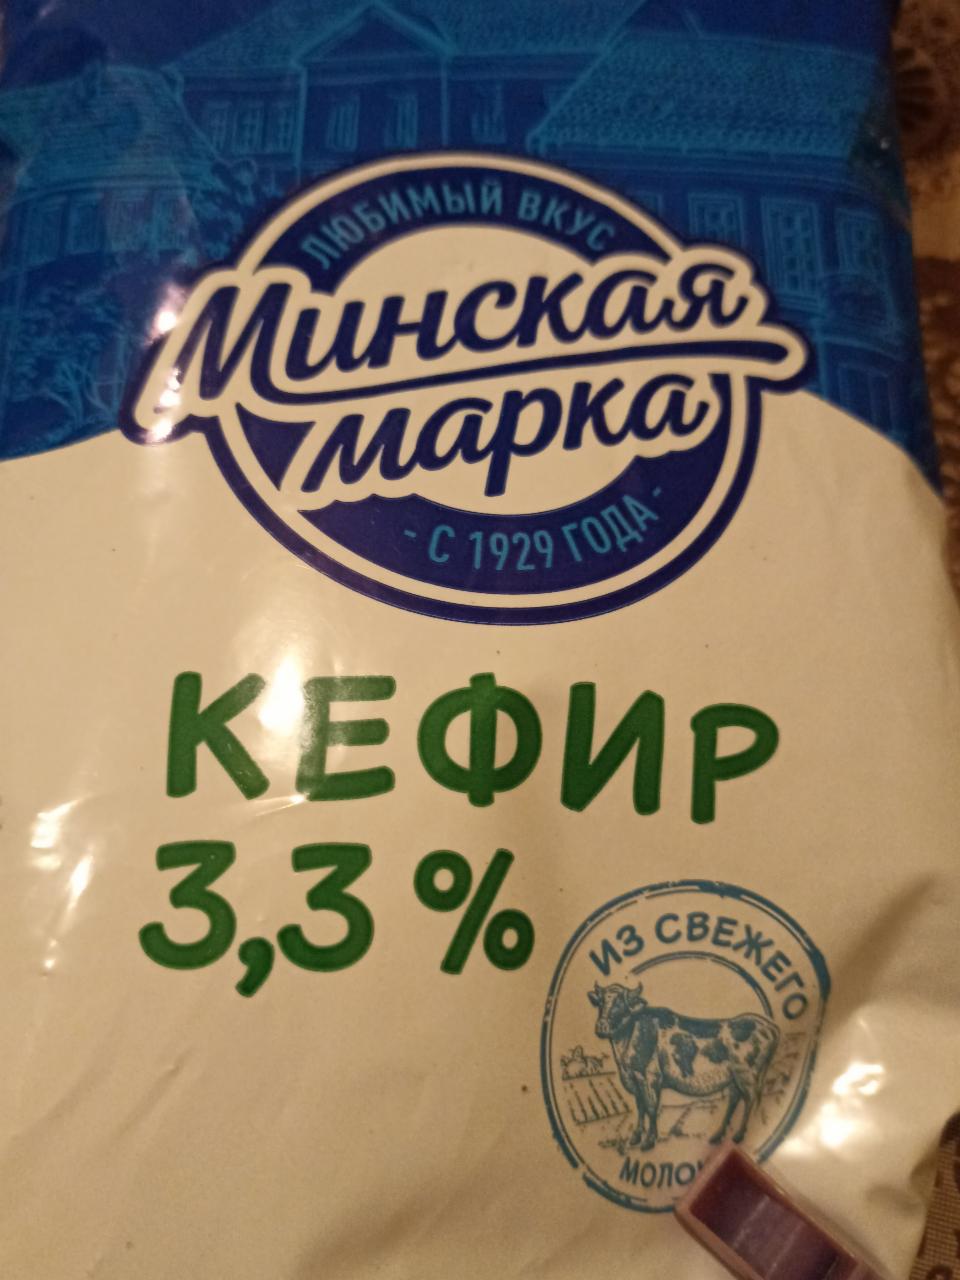 Фото - Кефир 3.3% Минская марка